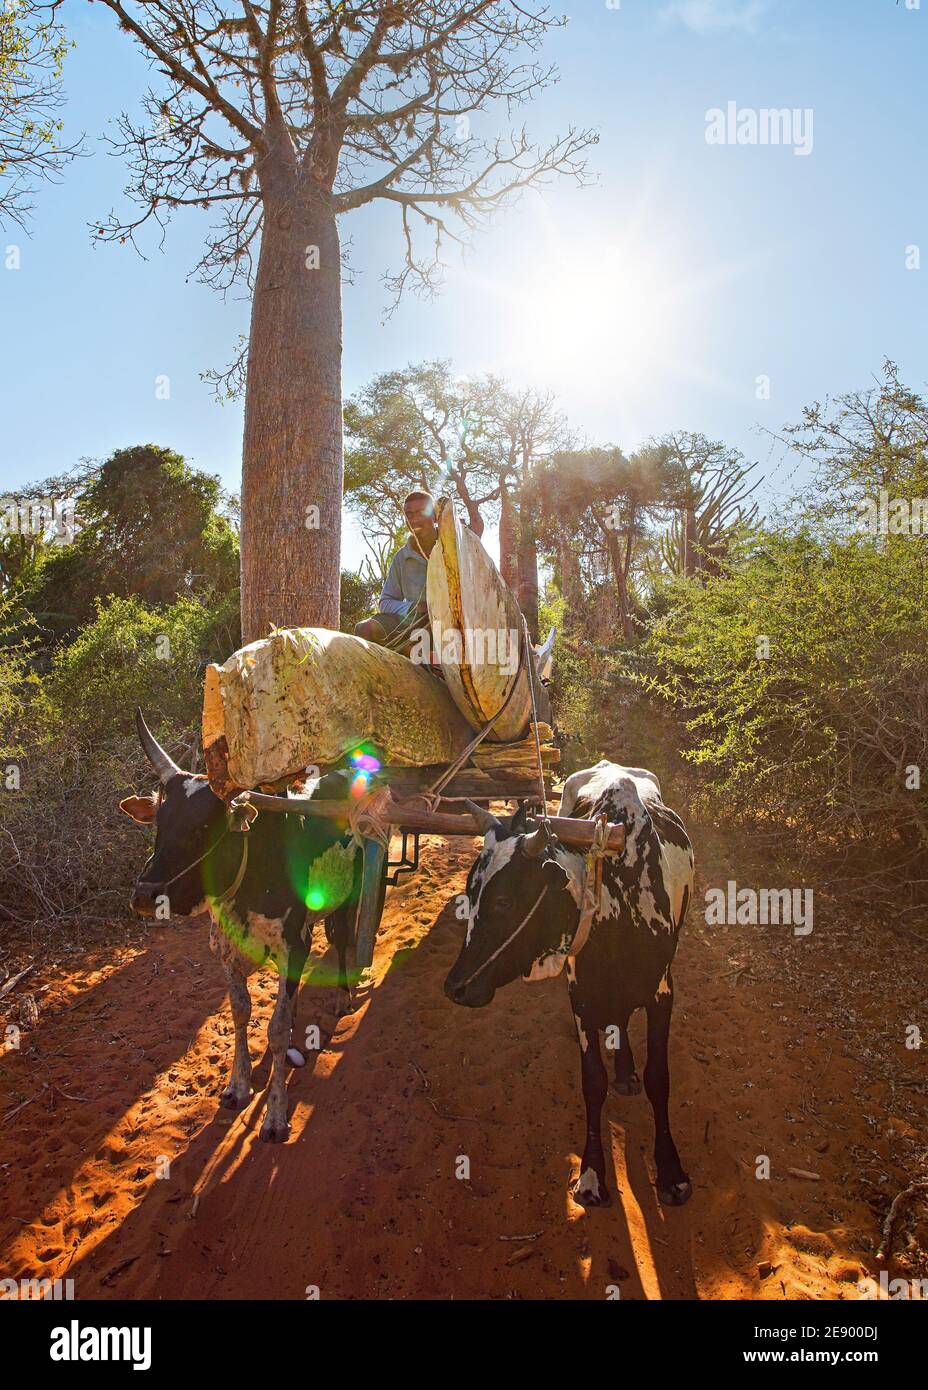 Ifaty, Madagascar - 01 mai 2019 : homme malgache inconnu portant des pirogas non terminés, sur son simple chariot en bois tiré par deux vaches de zébu. DIM Banque D'Images